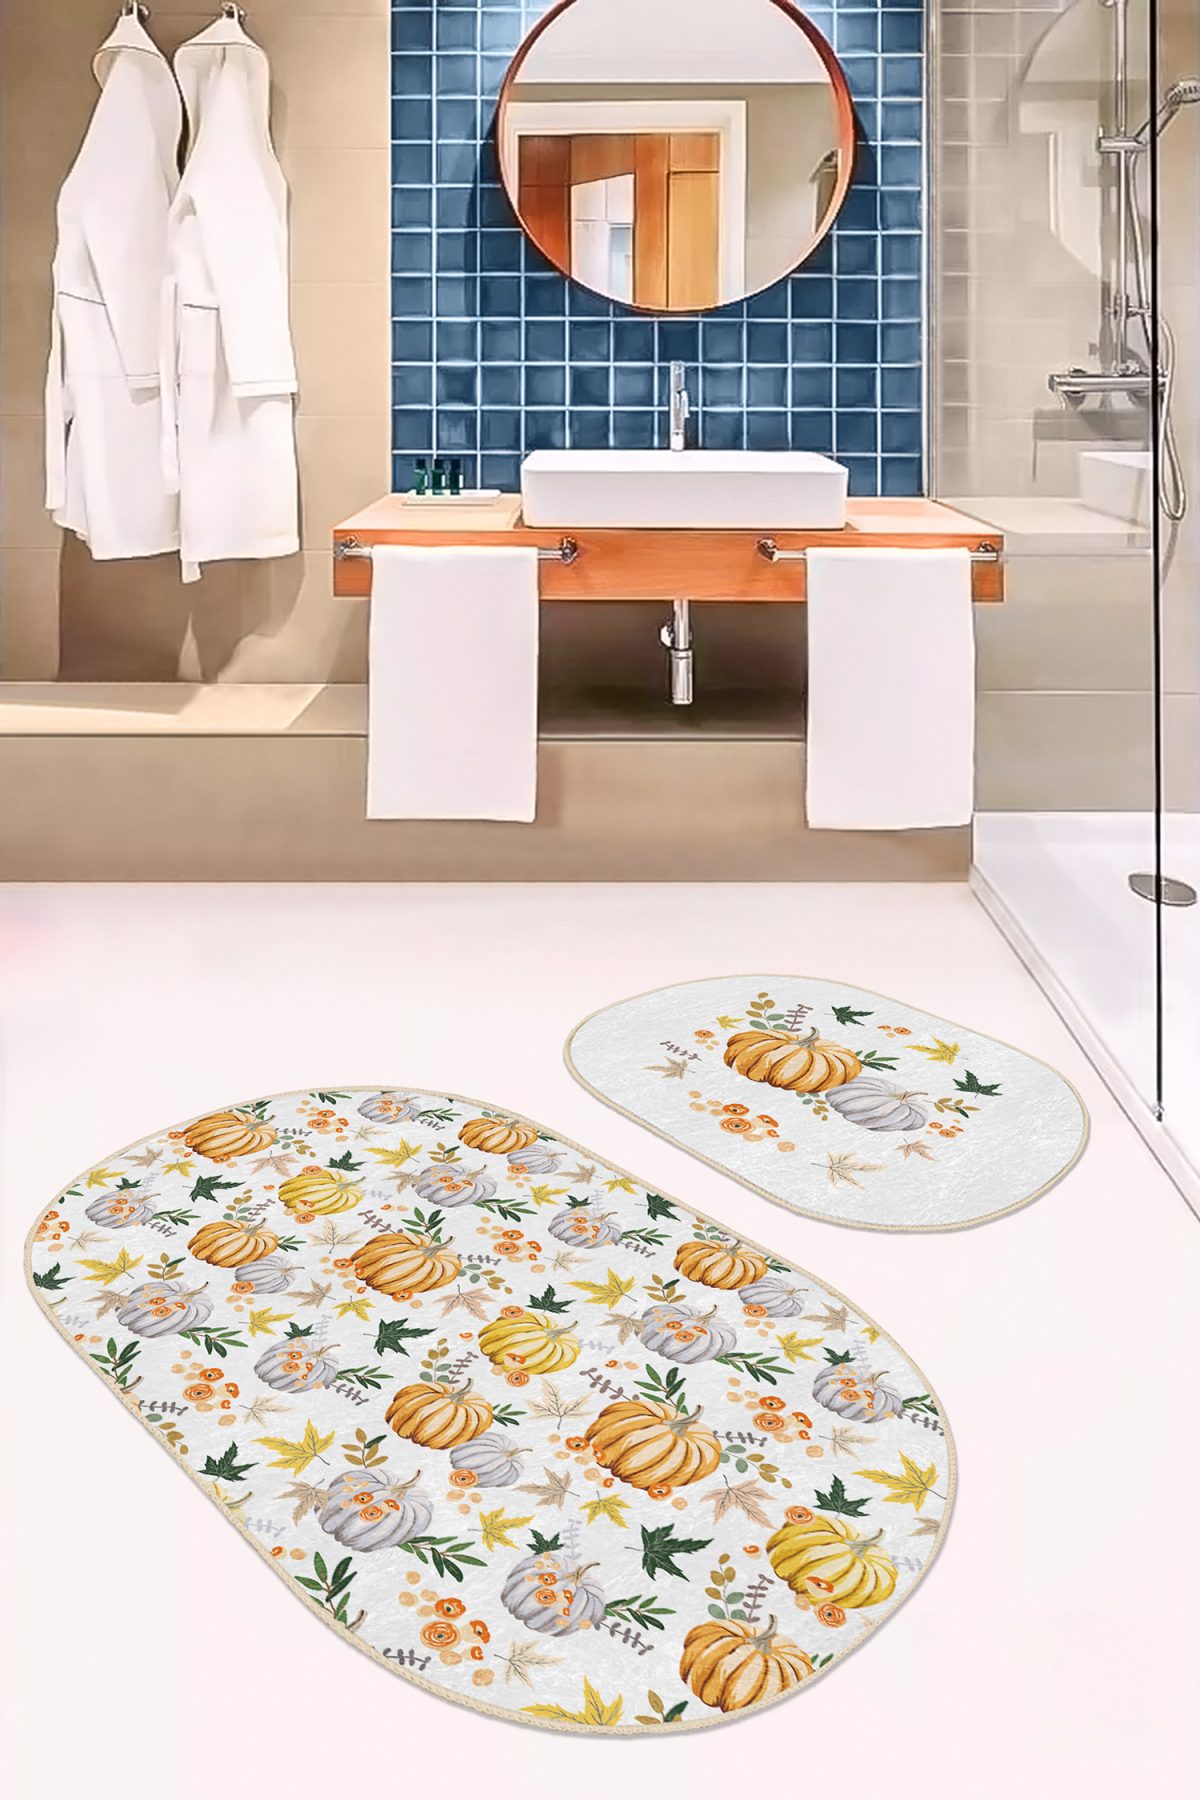 Özel Tasarımlı Kabak Motifli 2'li Oval Kaymaz Tabanlı Banyo & Mutfak Paspas Takımı Realhomes